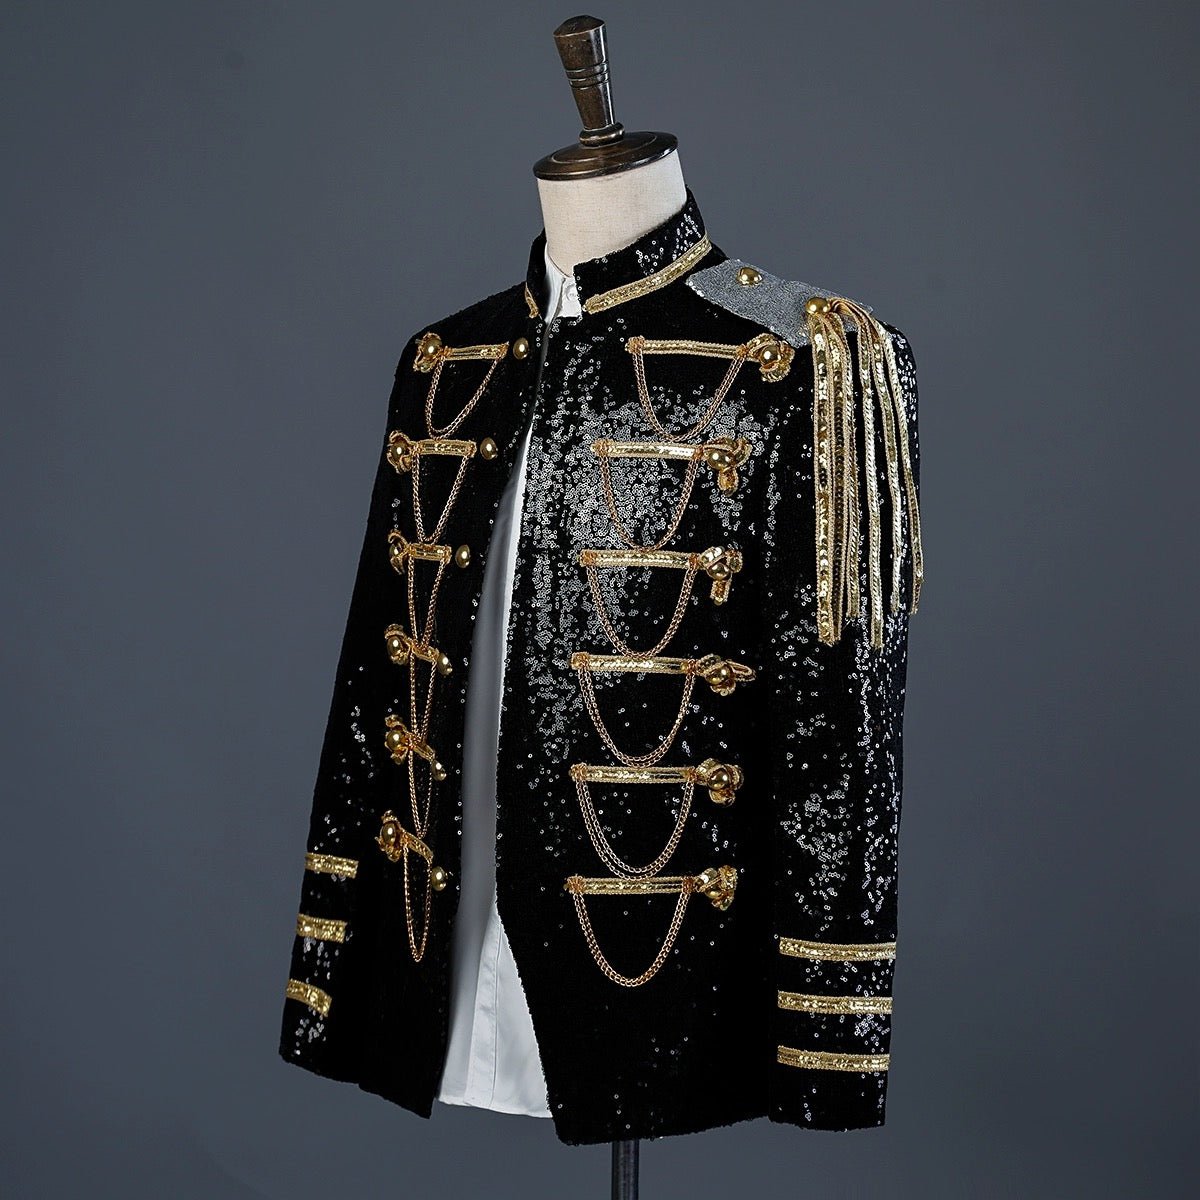 Black and Gold Regency Vintage Menswear - Embroidered Military Jacket for Men Plus Size - WonderlandByLilian